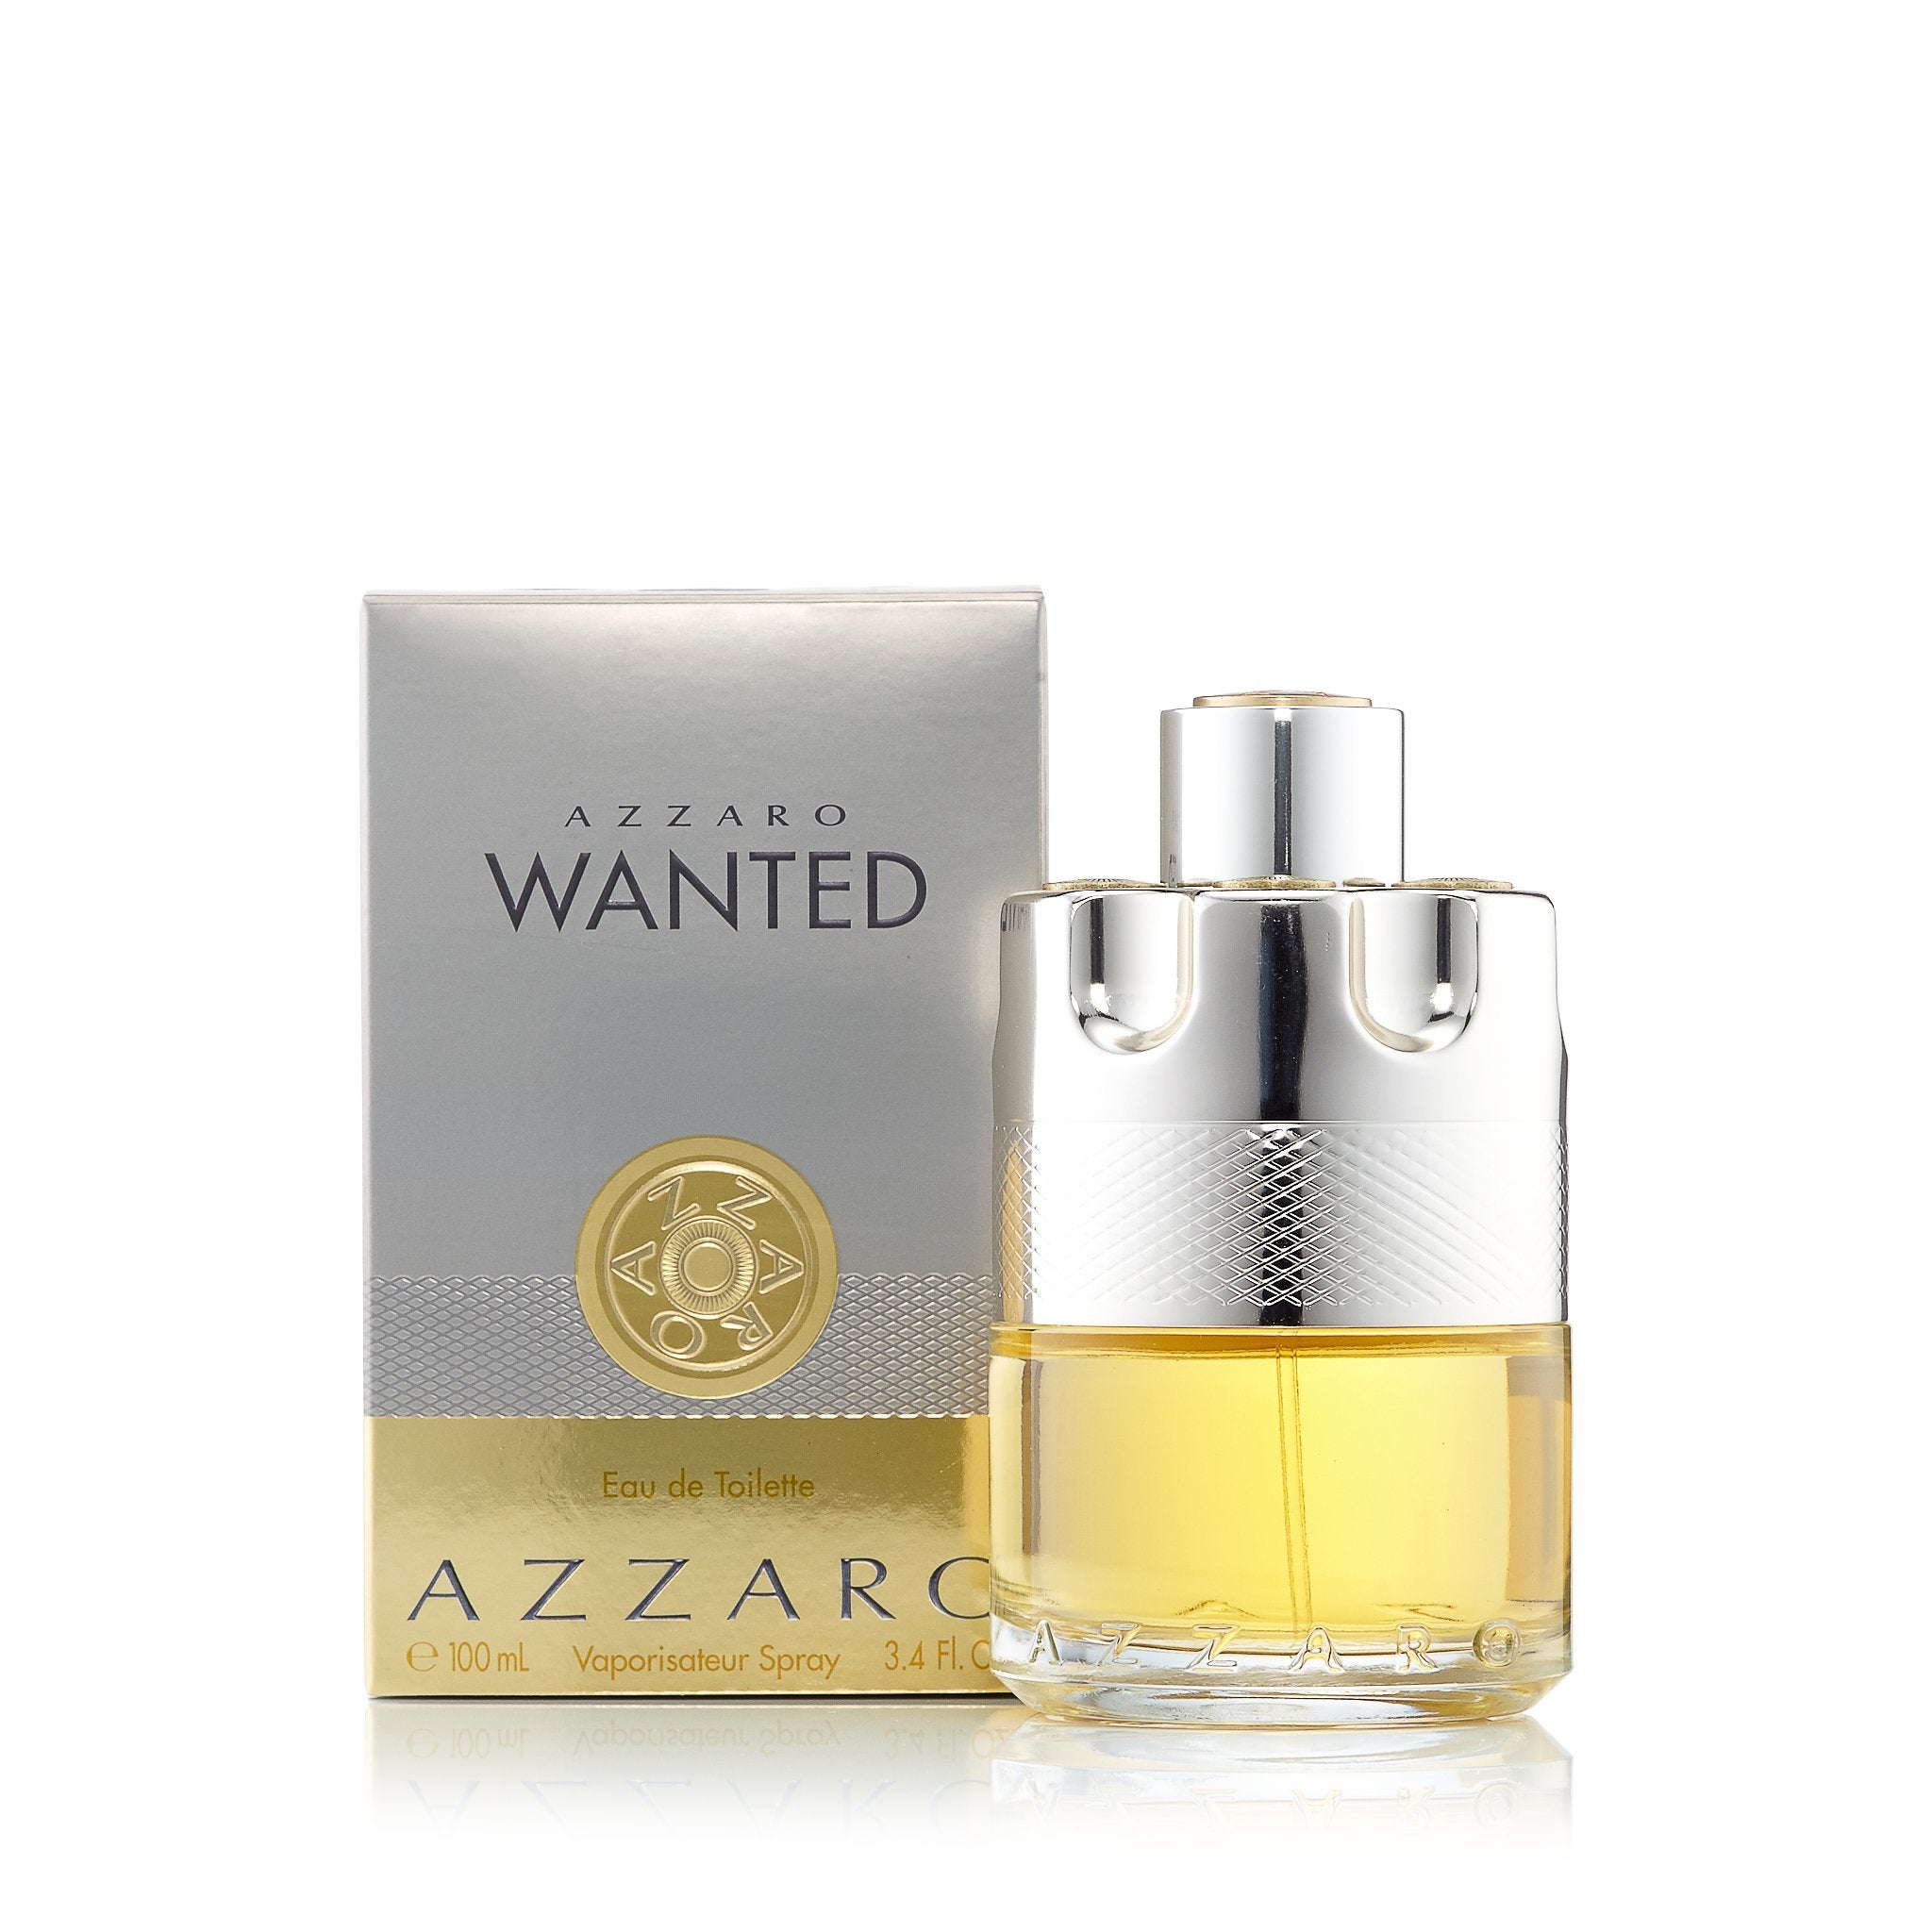 Vintage Loris Azzaro Oh La La 100ml women's perfume